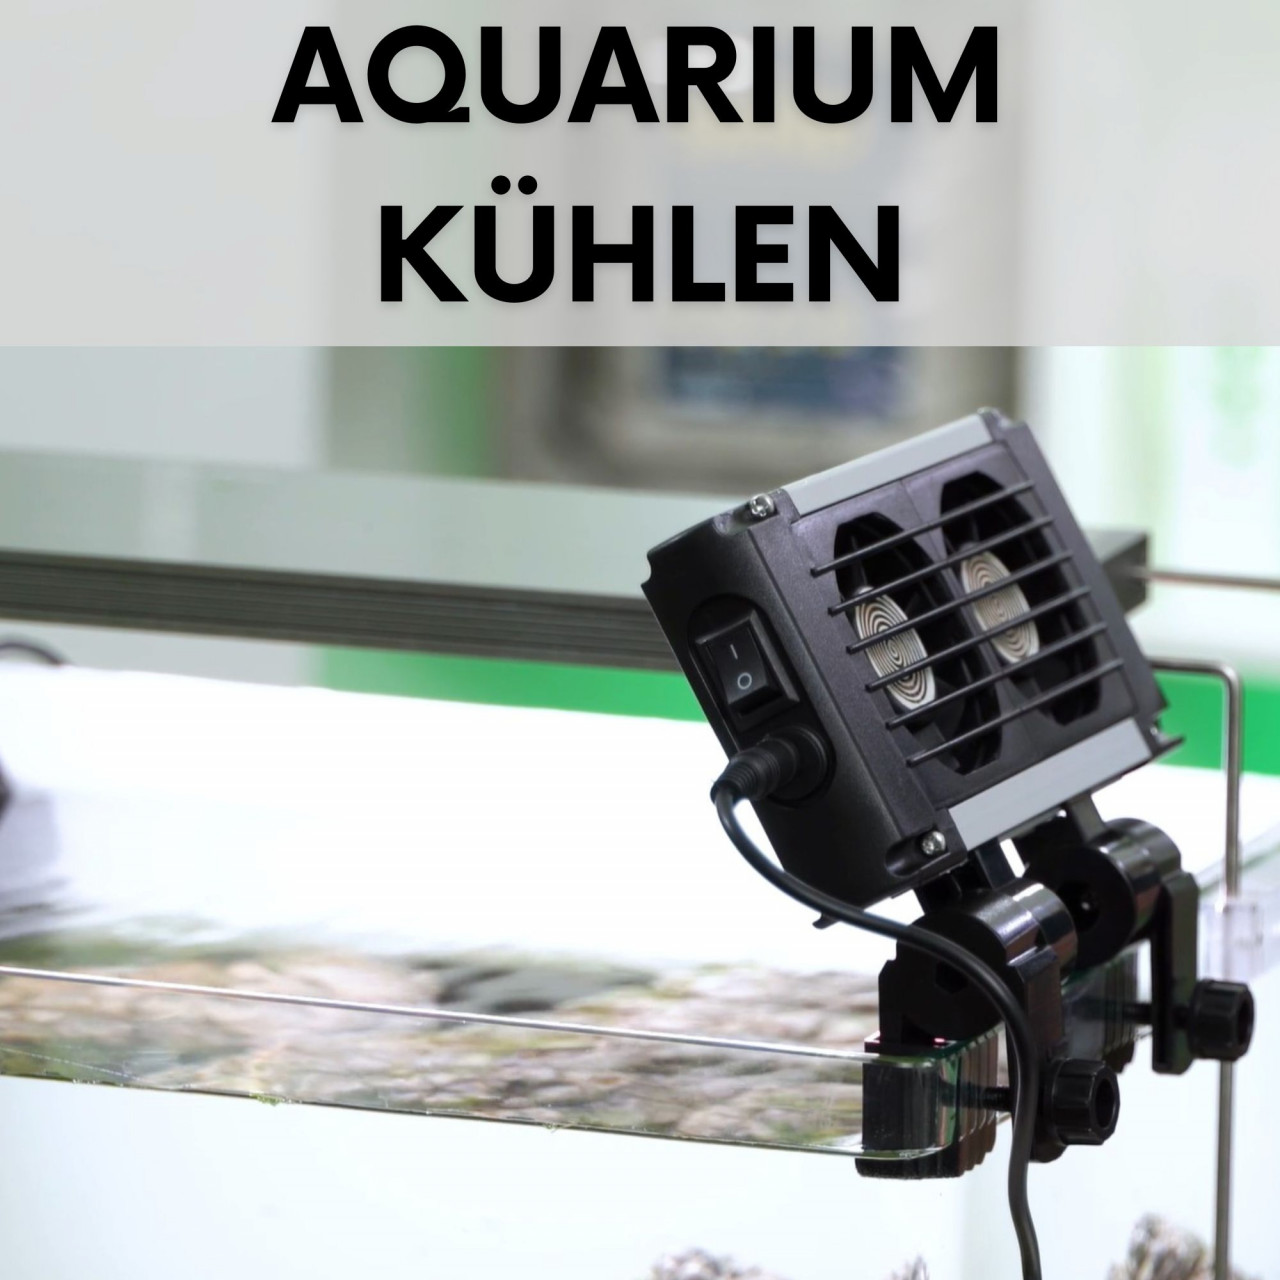 aquarium-kuehlen-sommer